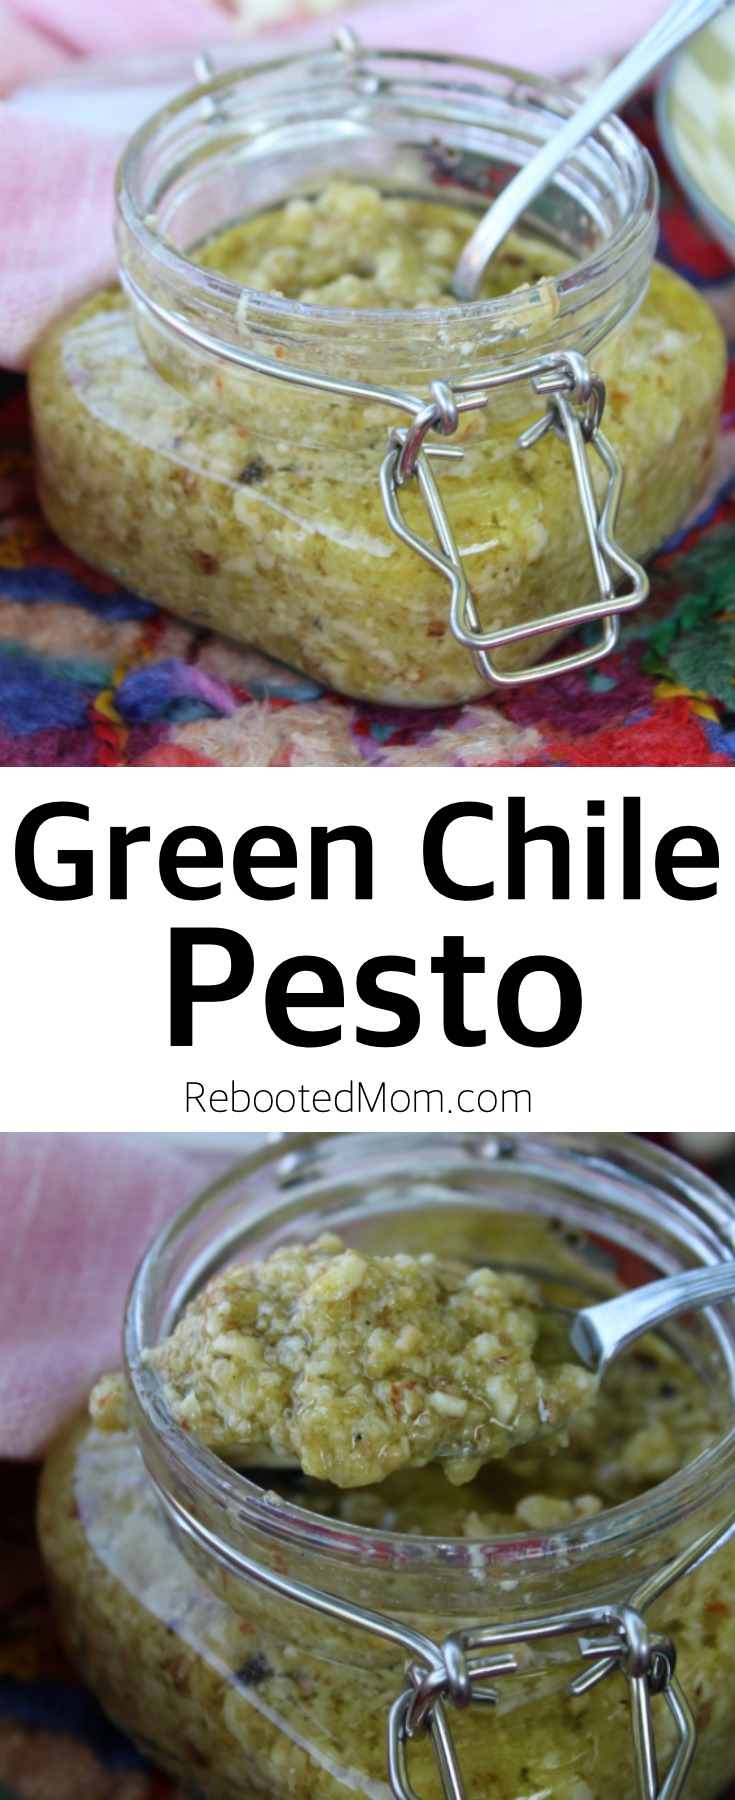 Green Chile Pesto